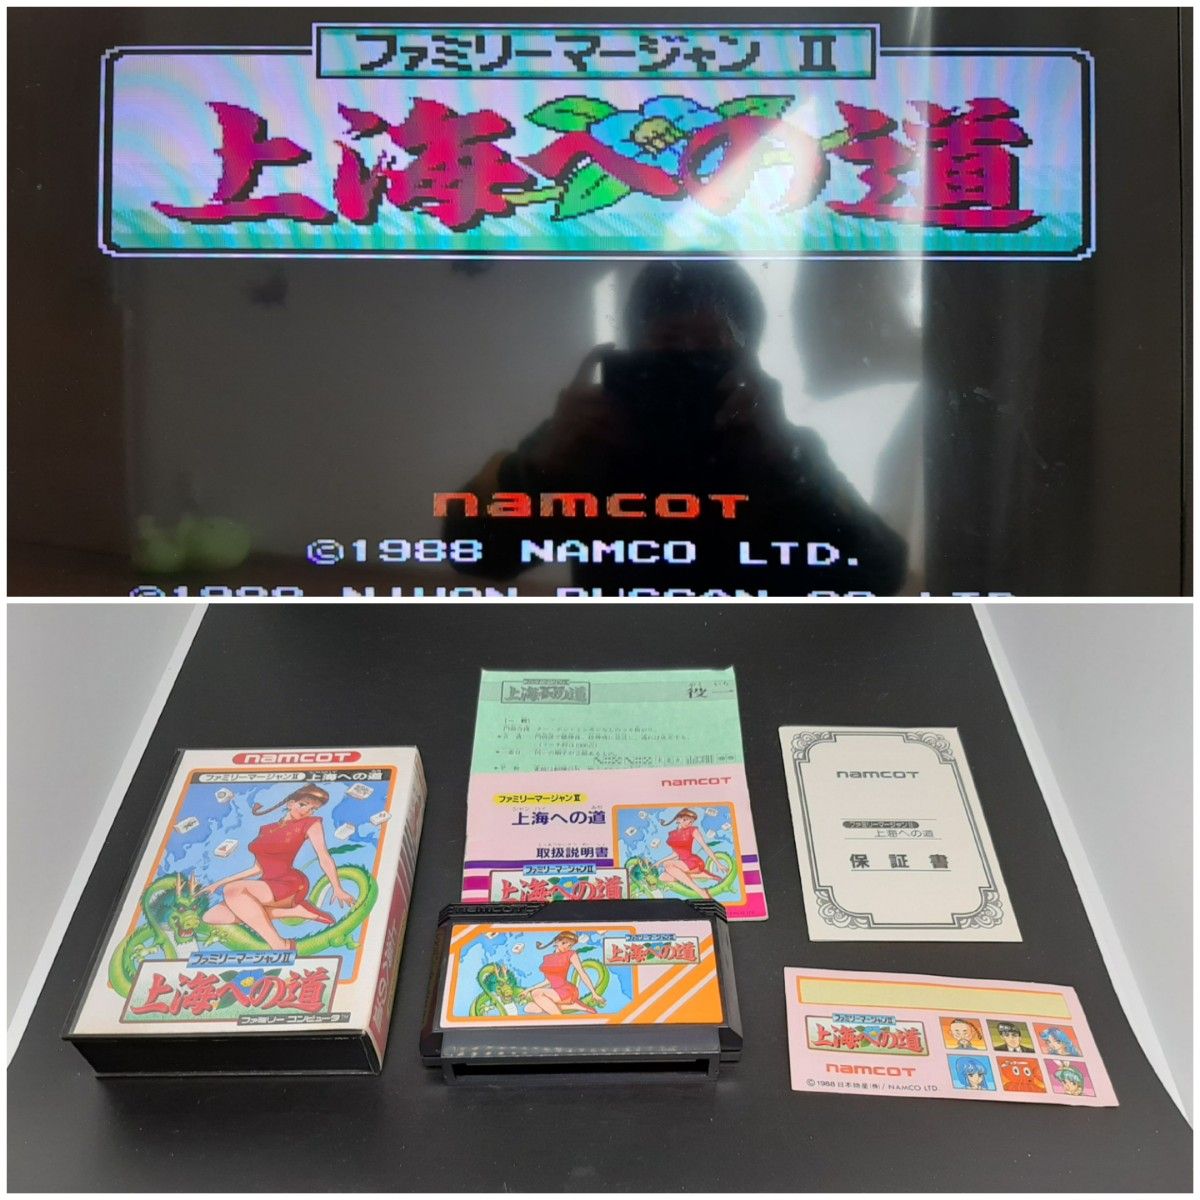 ファミリーマージャン２上海への道 ファミコン FC 中4段 ソフト ゲーム カセットファミコン カセット